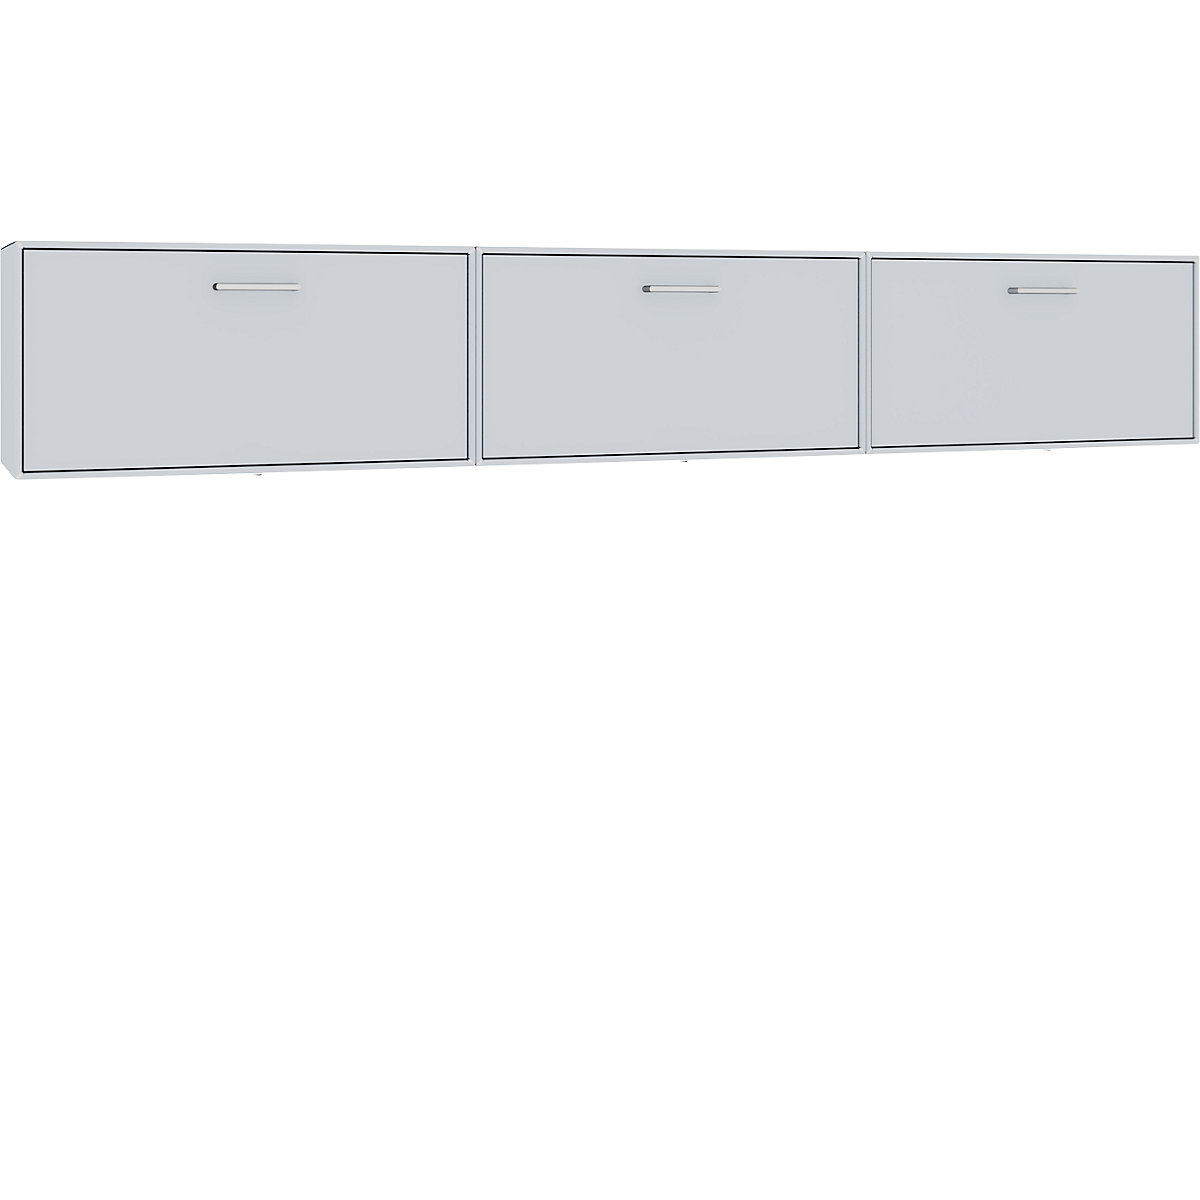 mauser Combinación de muebles-bar colgantes: 3 barras abatibles | KAISER+KRAFT